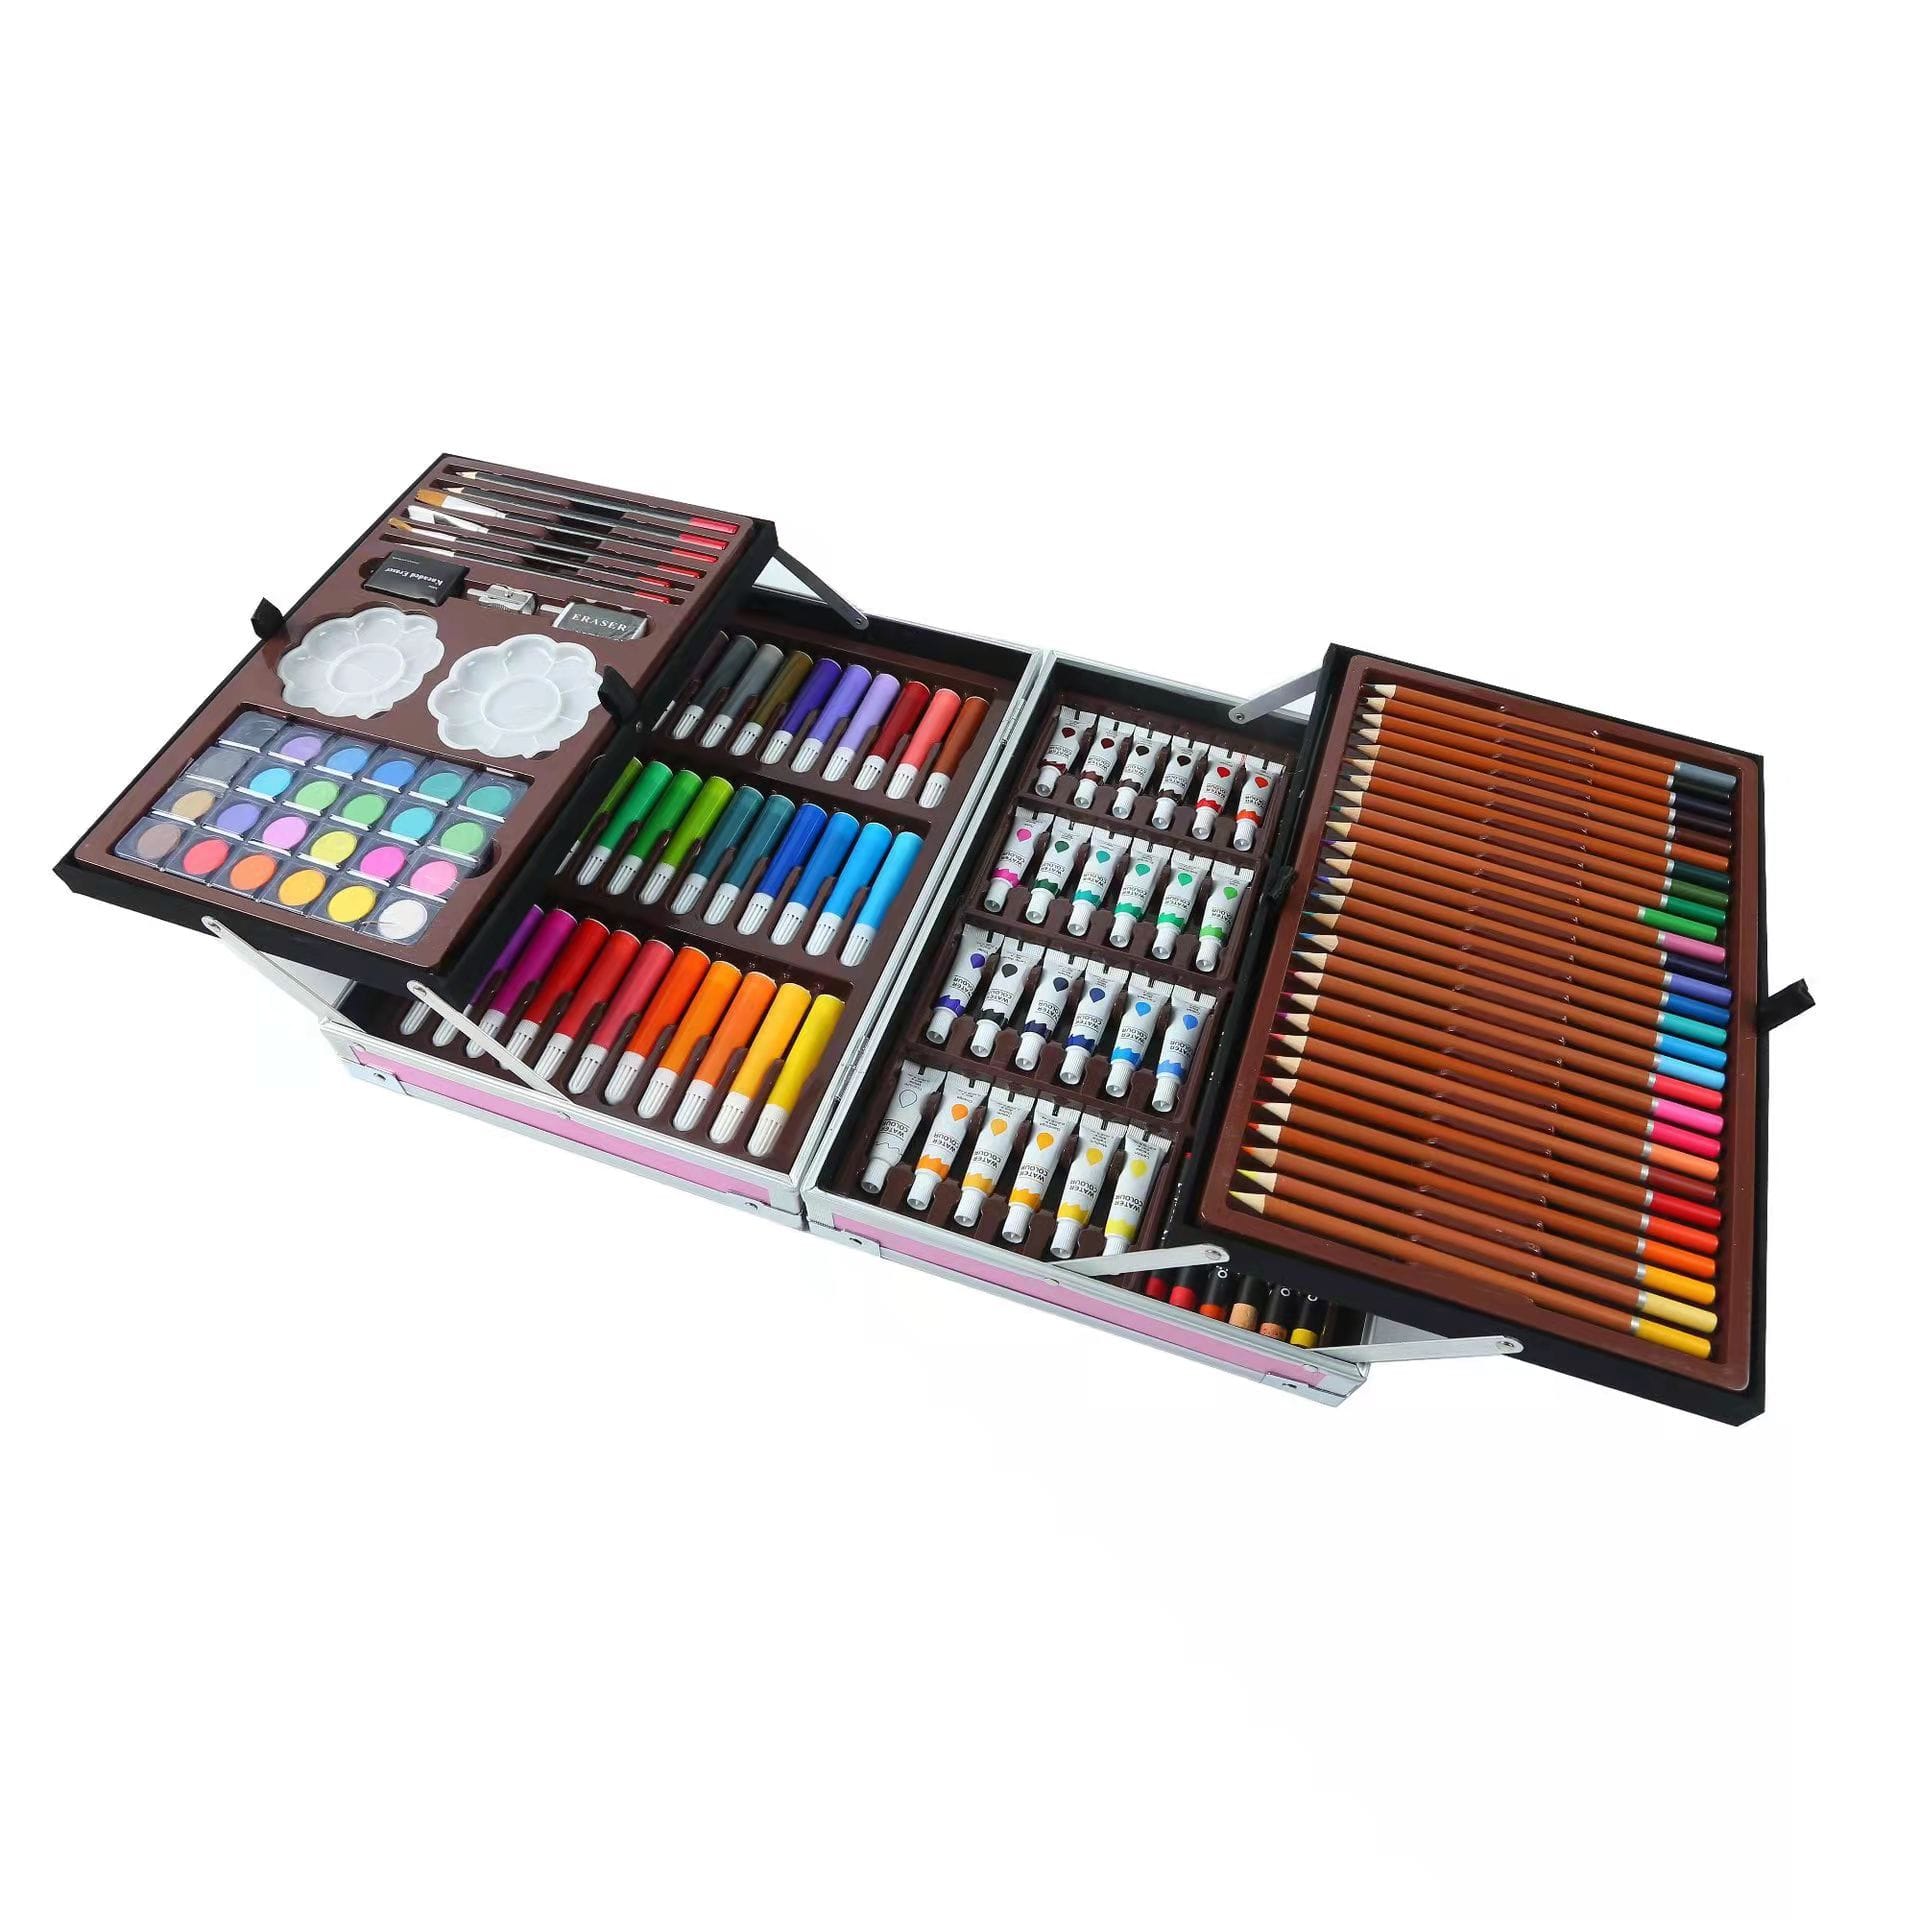  Kit de pintura de lujo para adultos, 48 piezas